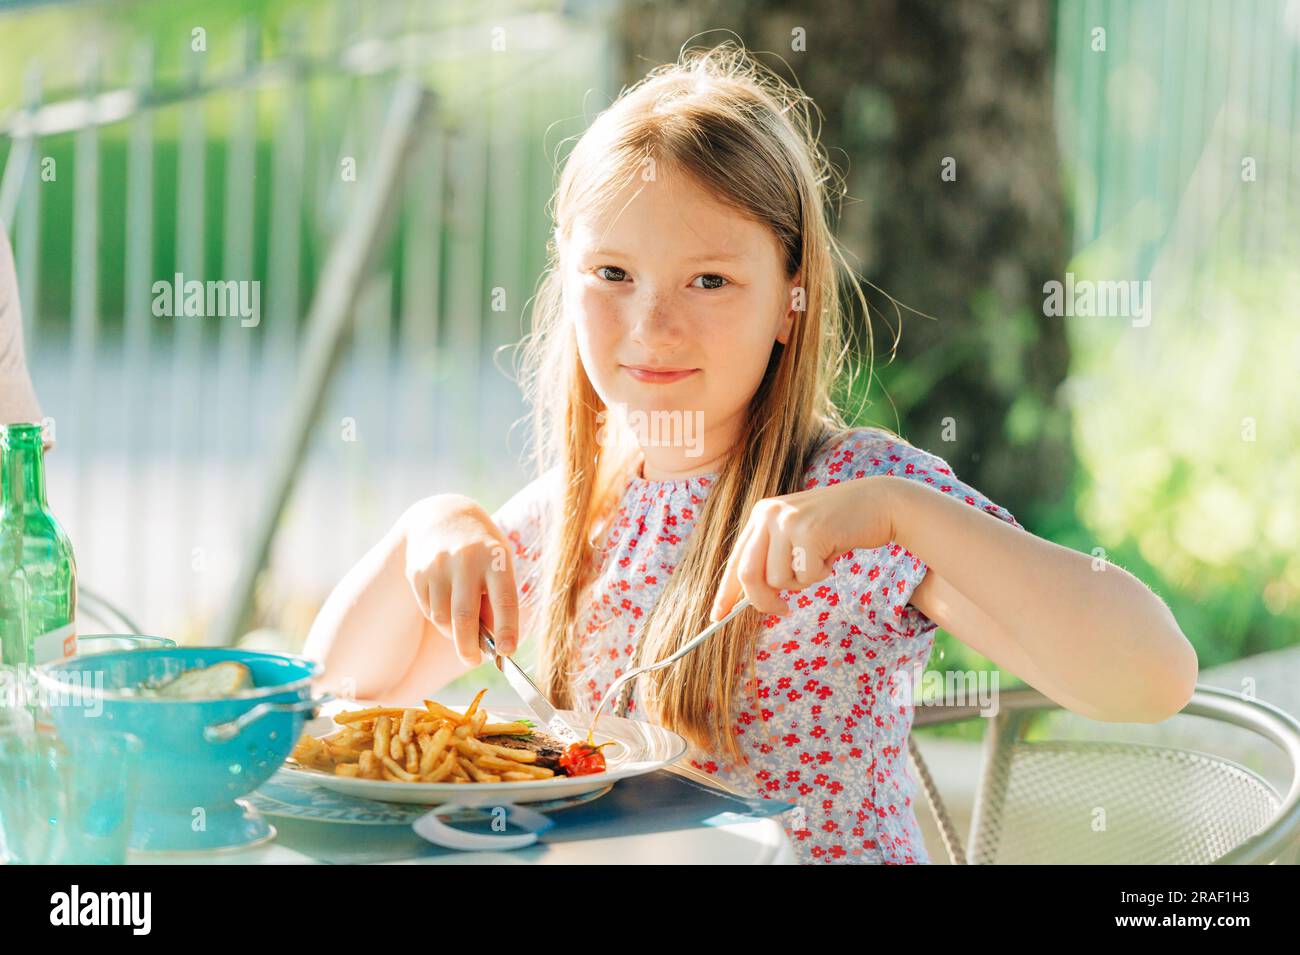 Little girl eating dinner on a terrace in outdoor restaurant Stock Photo